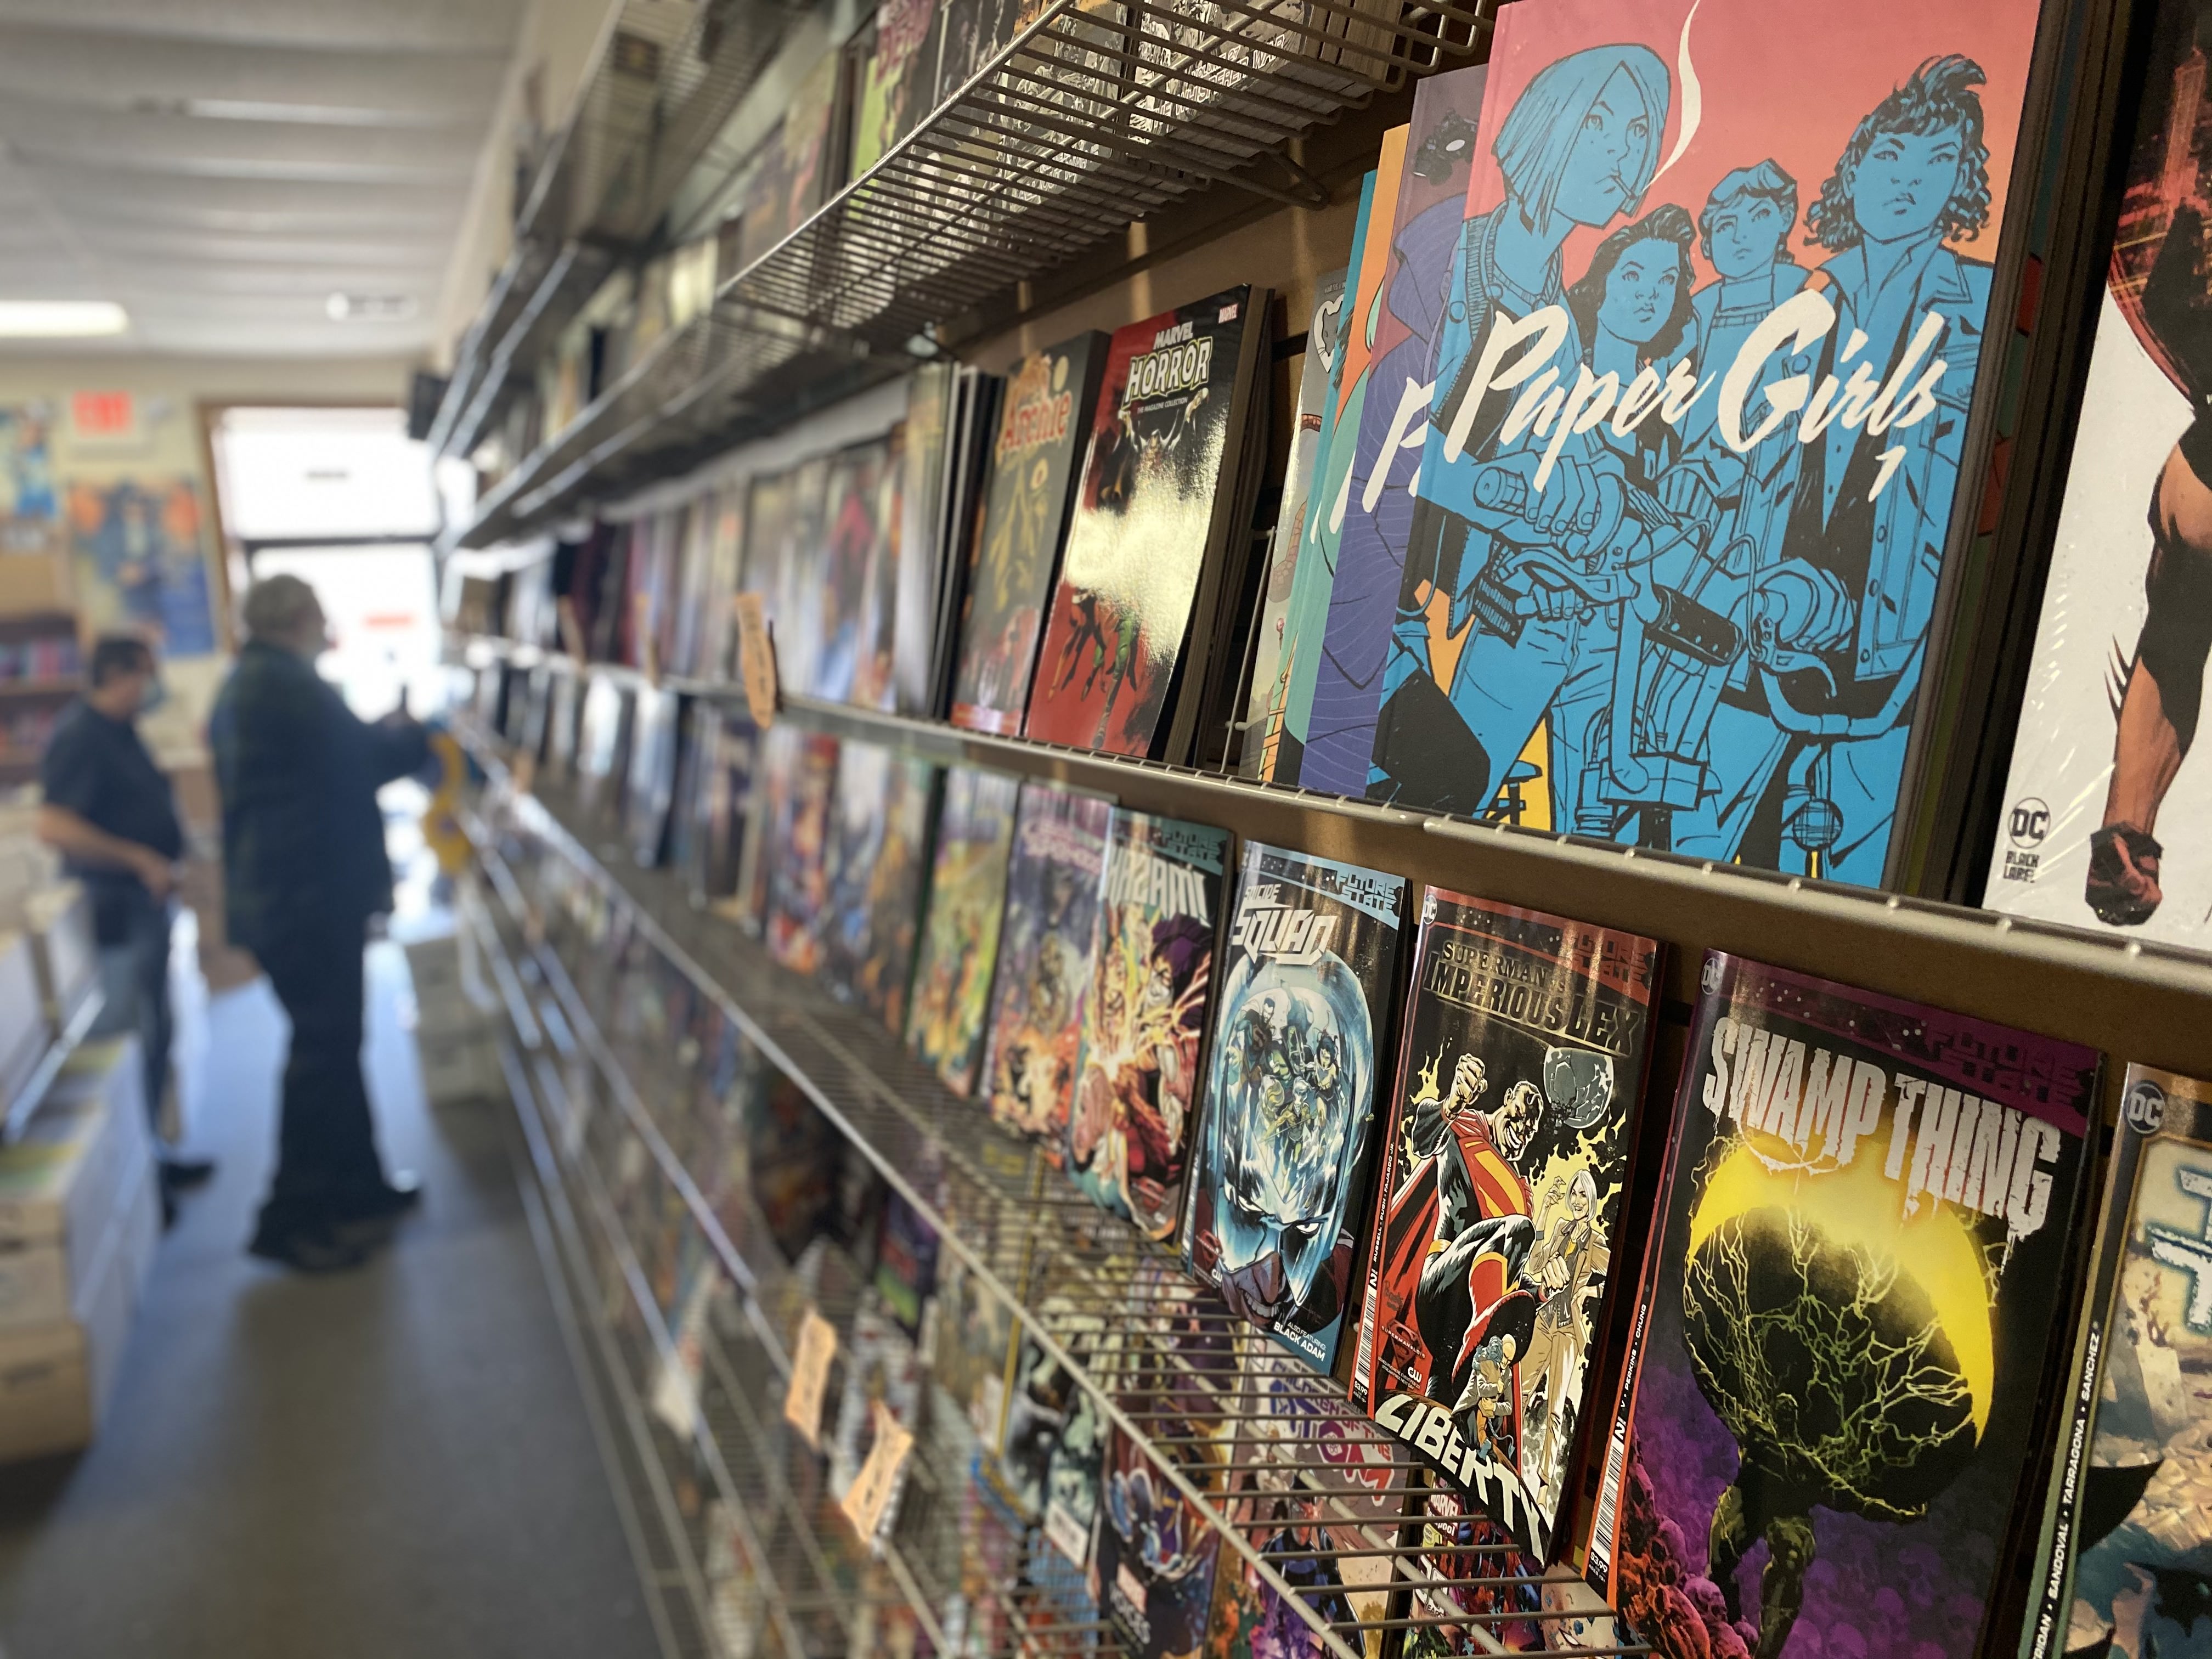 Comics on a shelf inside the store.